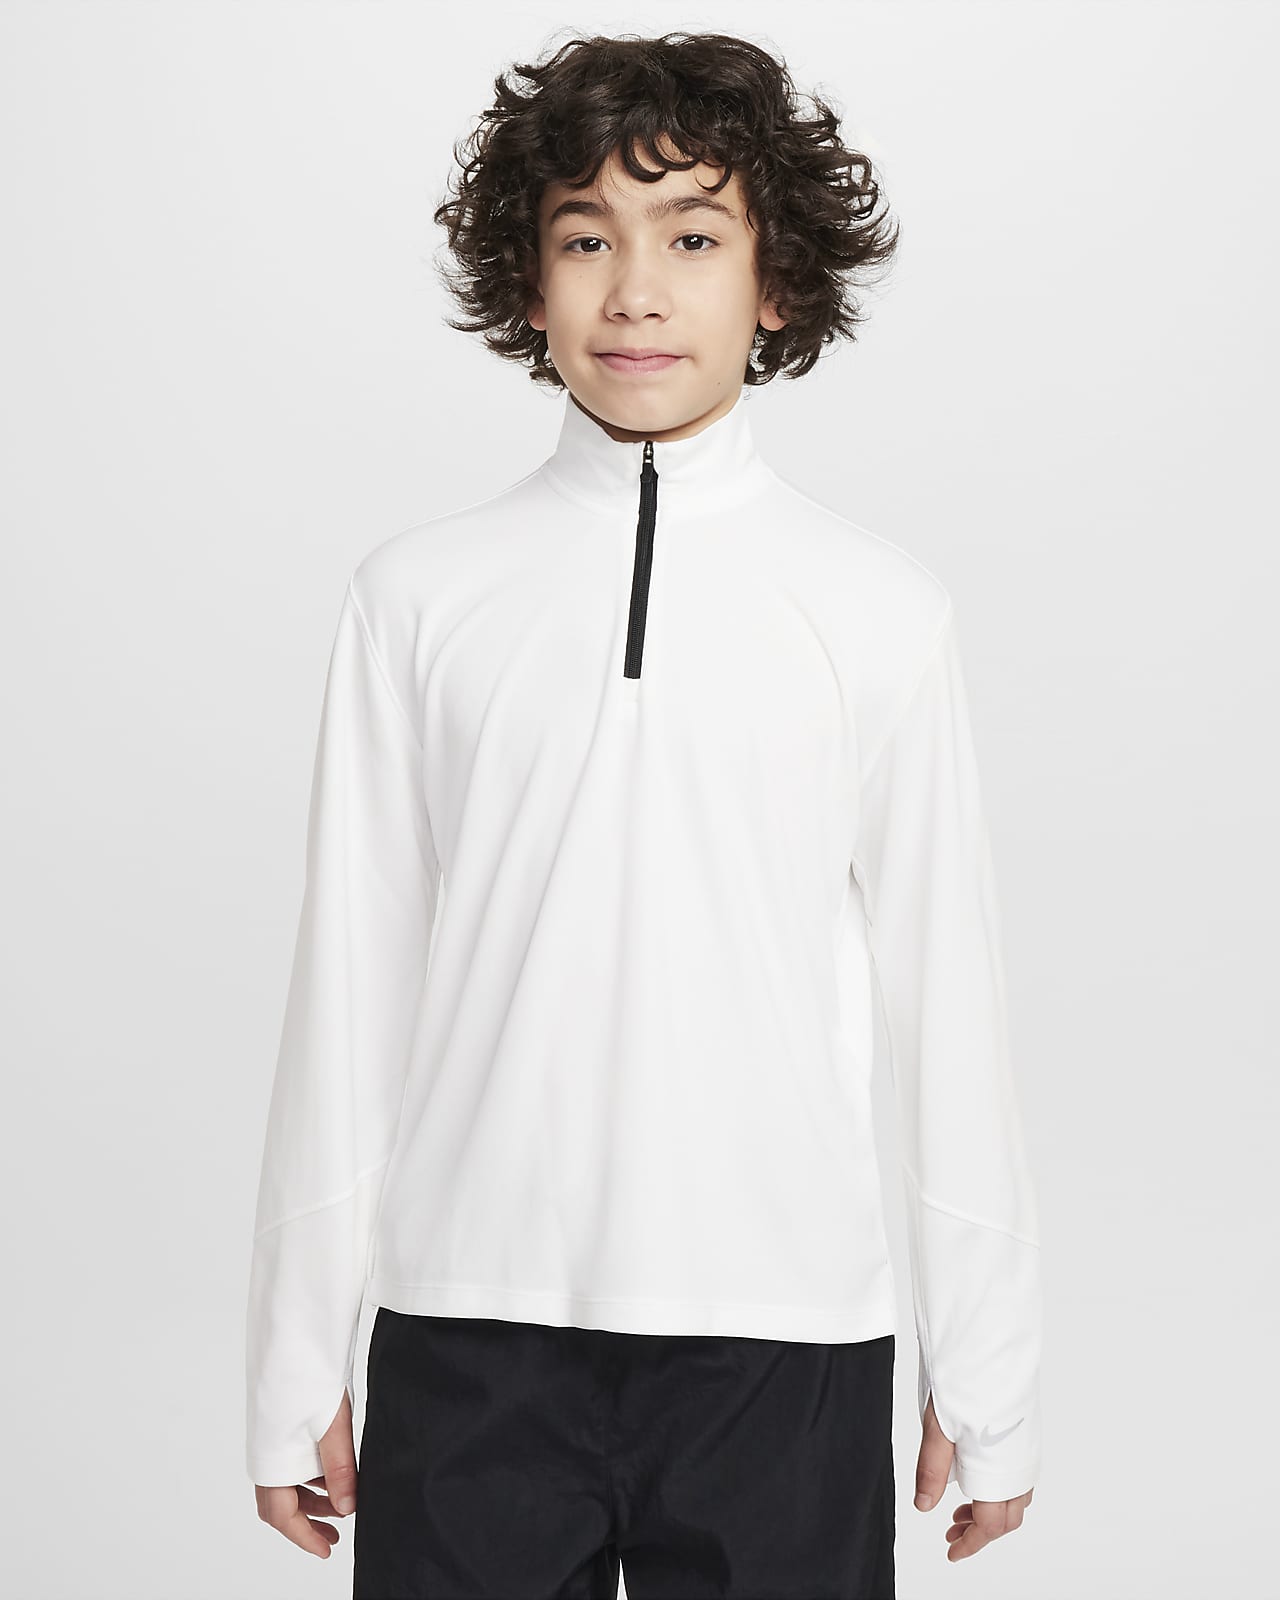 Nike Multi Older Kids' (Boys') Dri-FIT UV Long-Sleeve 1/2-Zip Top